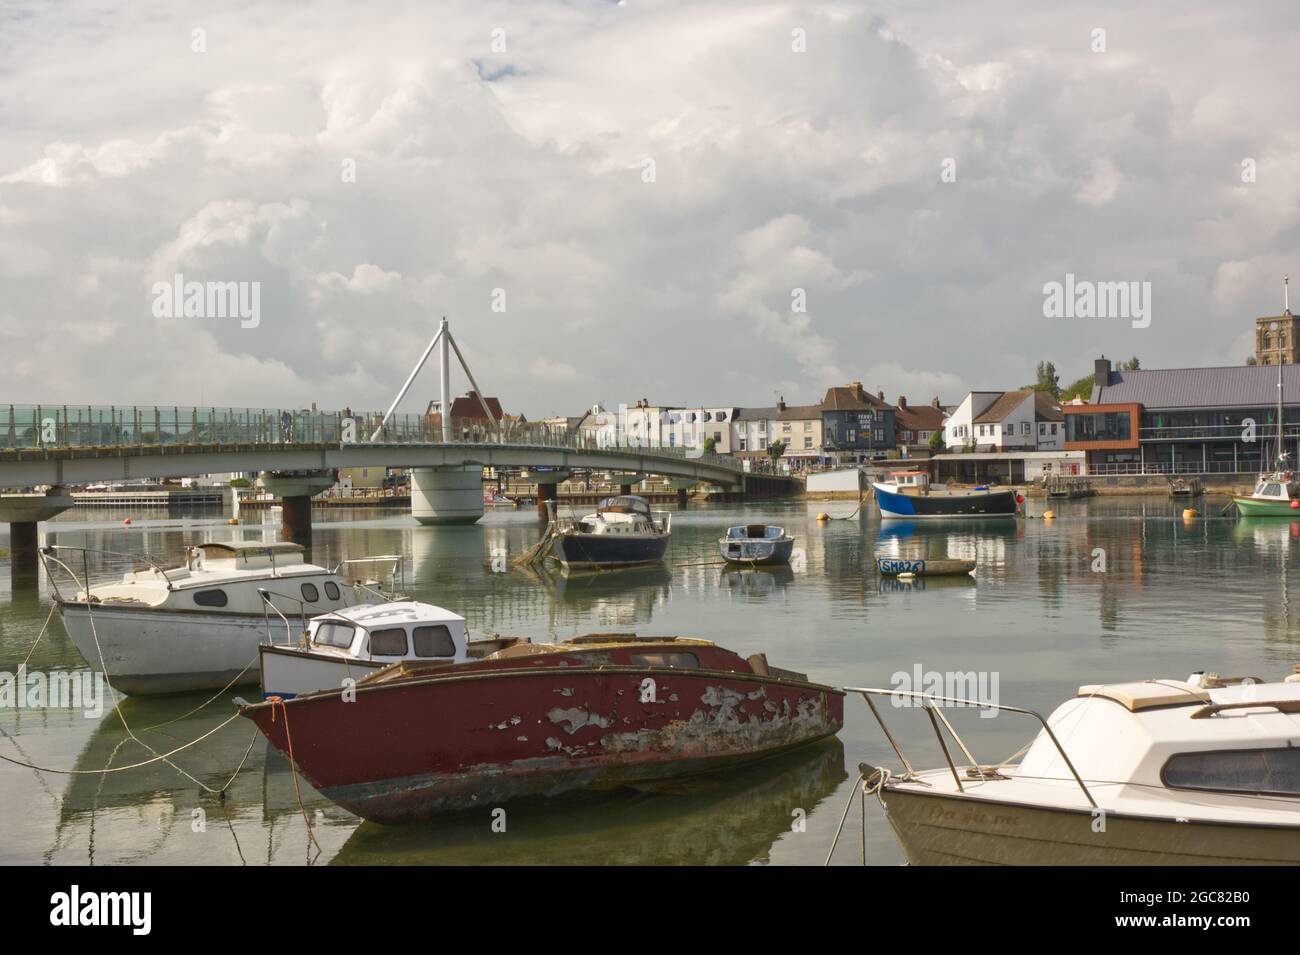 Bateaux amarrés sur la rivière Adur à Shoreham, West Sussex, Angleterre Banque D'Images